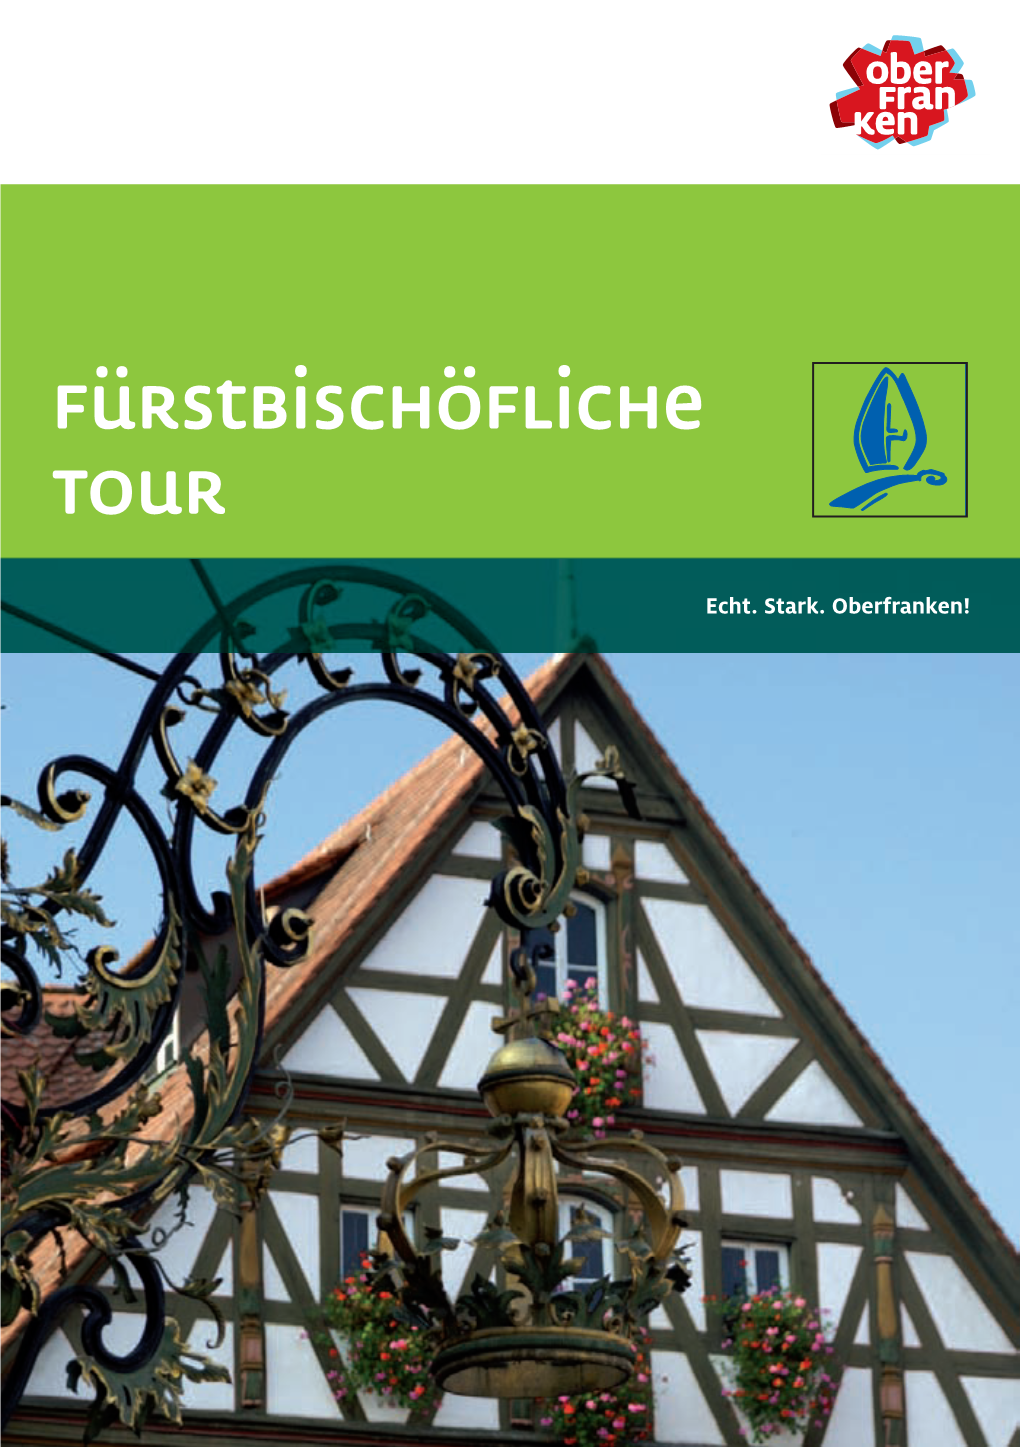 Fürstbischöfliche Tour Mit 510 M NN Den Höchsten Forchheim: Rathaus, Katharinenspital, St